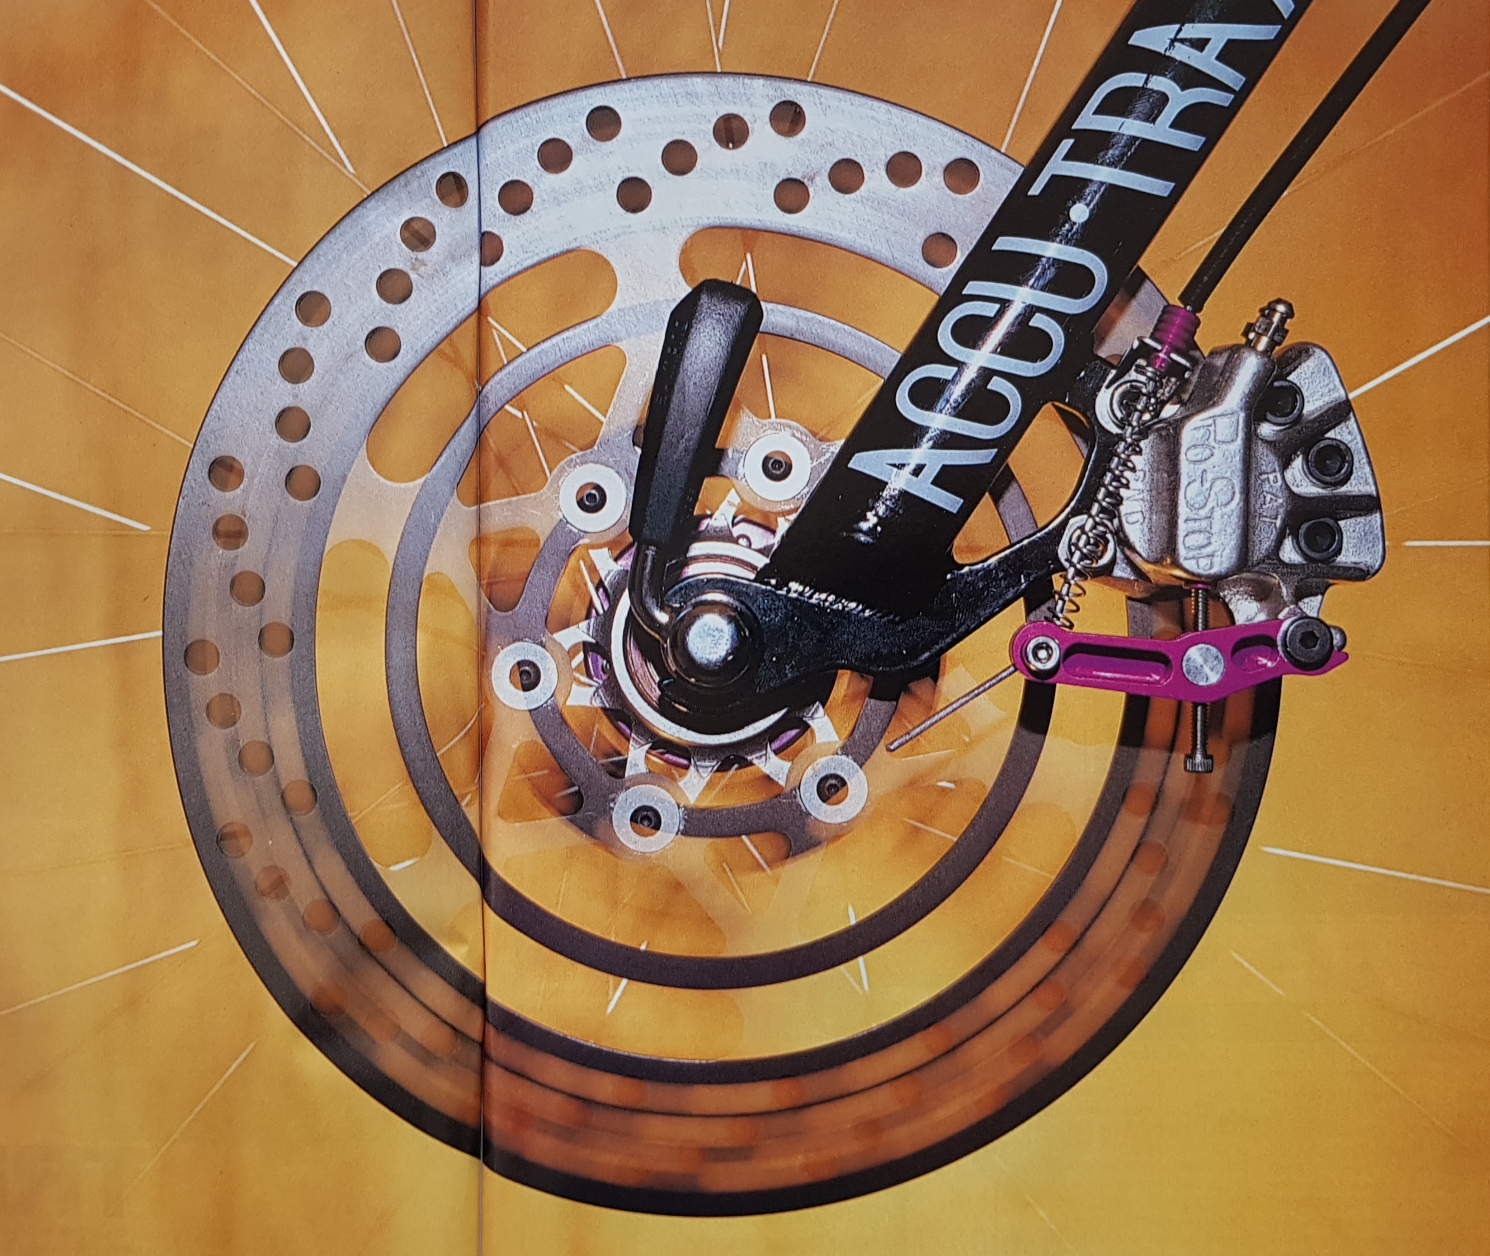 Accu Trax mit Pro-Stop disc brake Bild aus Bike 3 1992.jpg